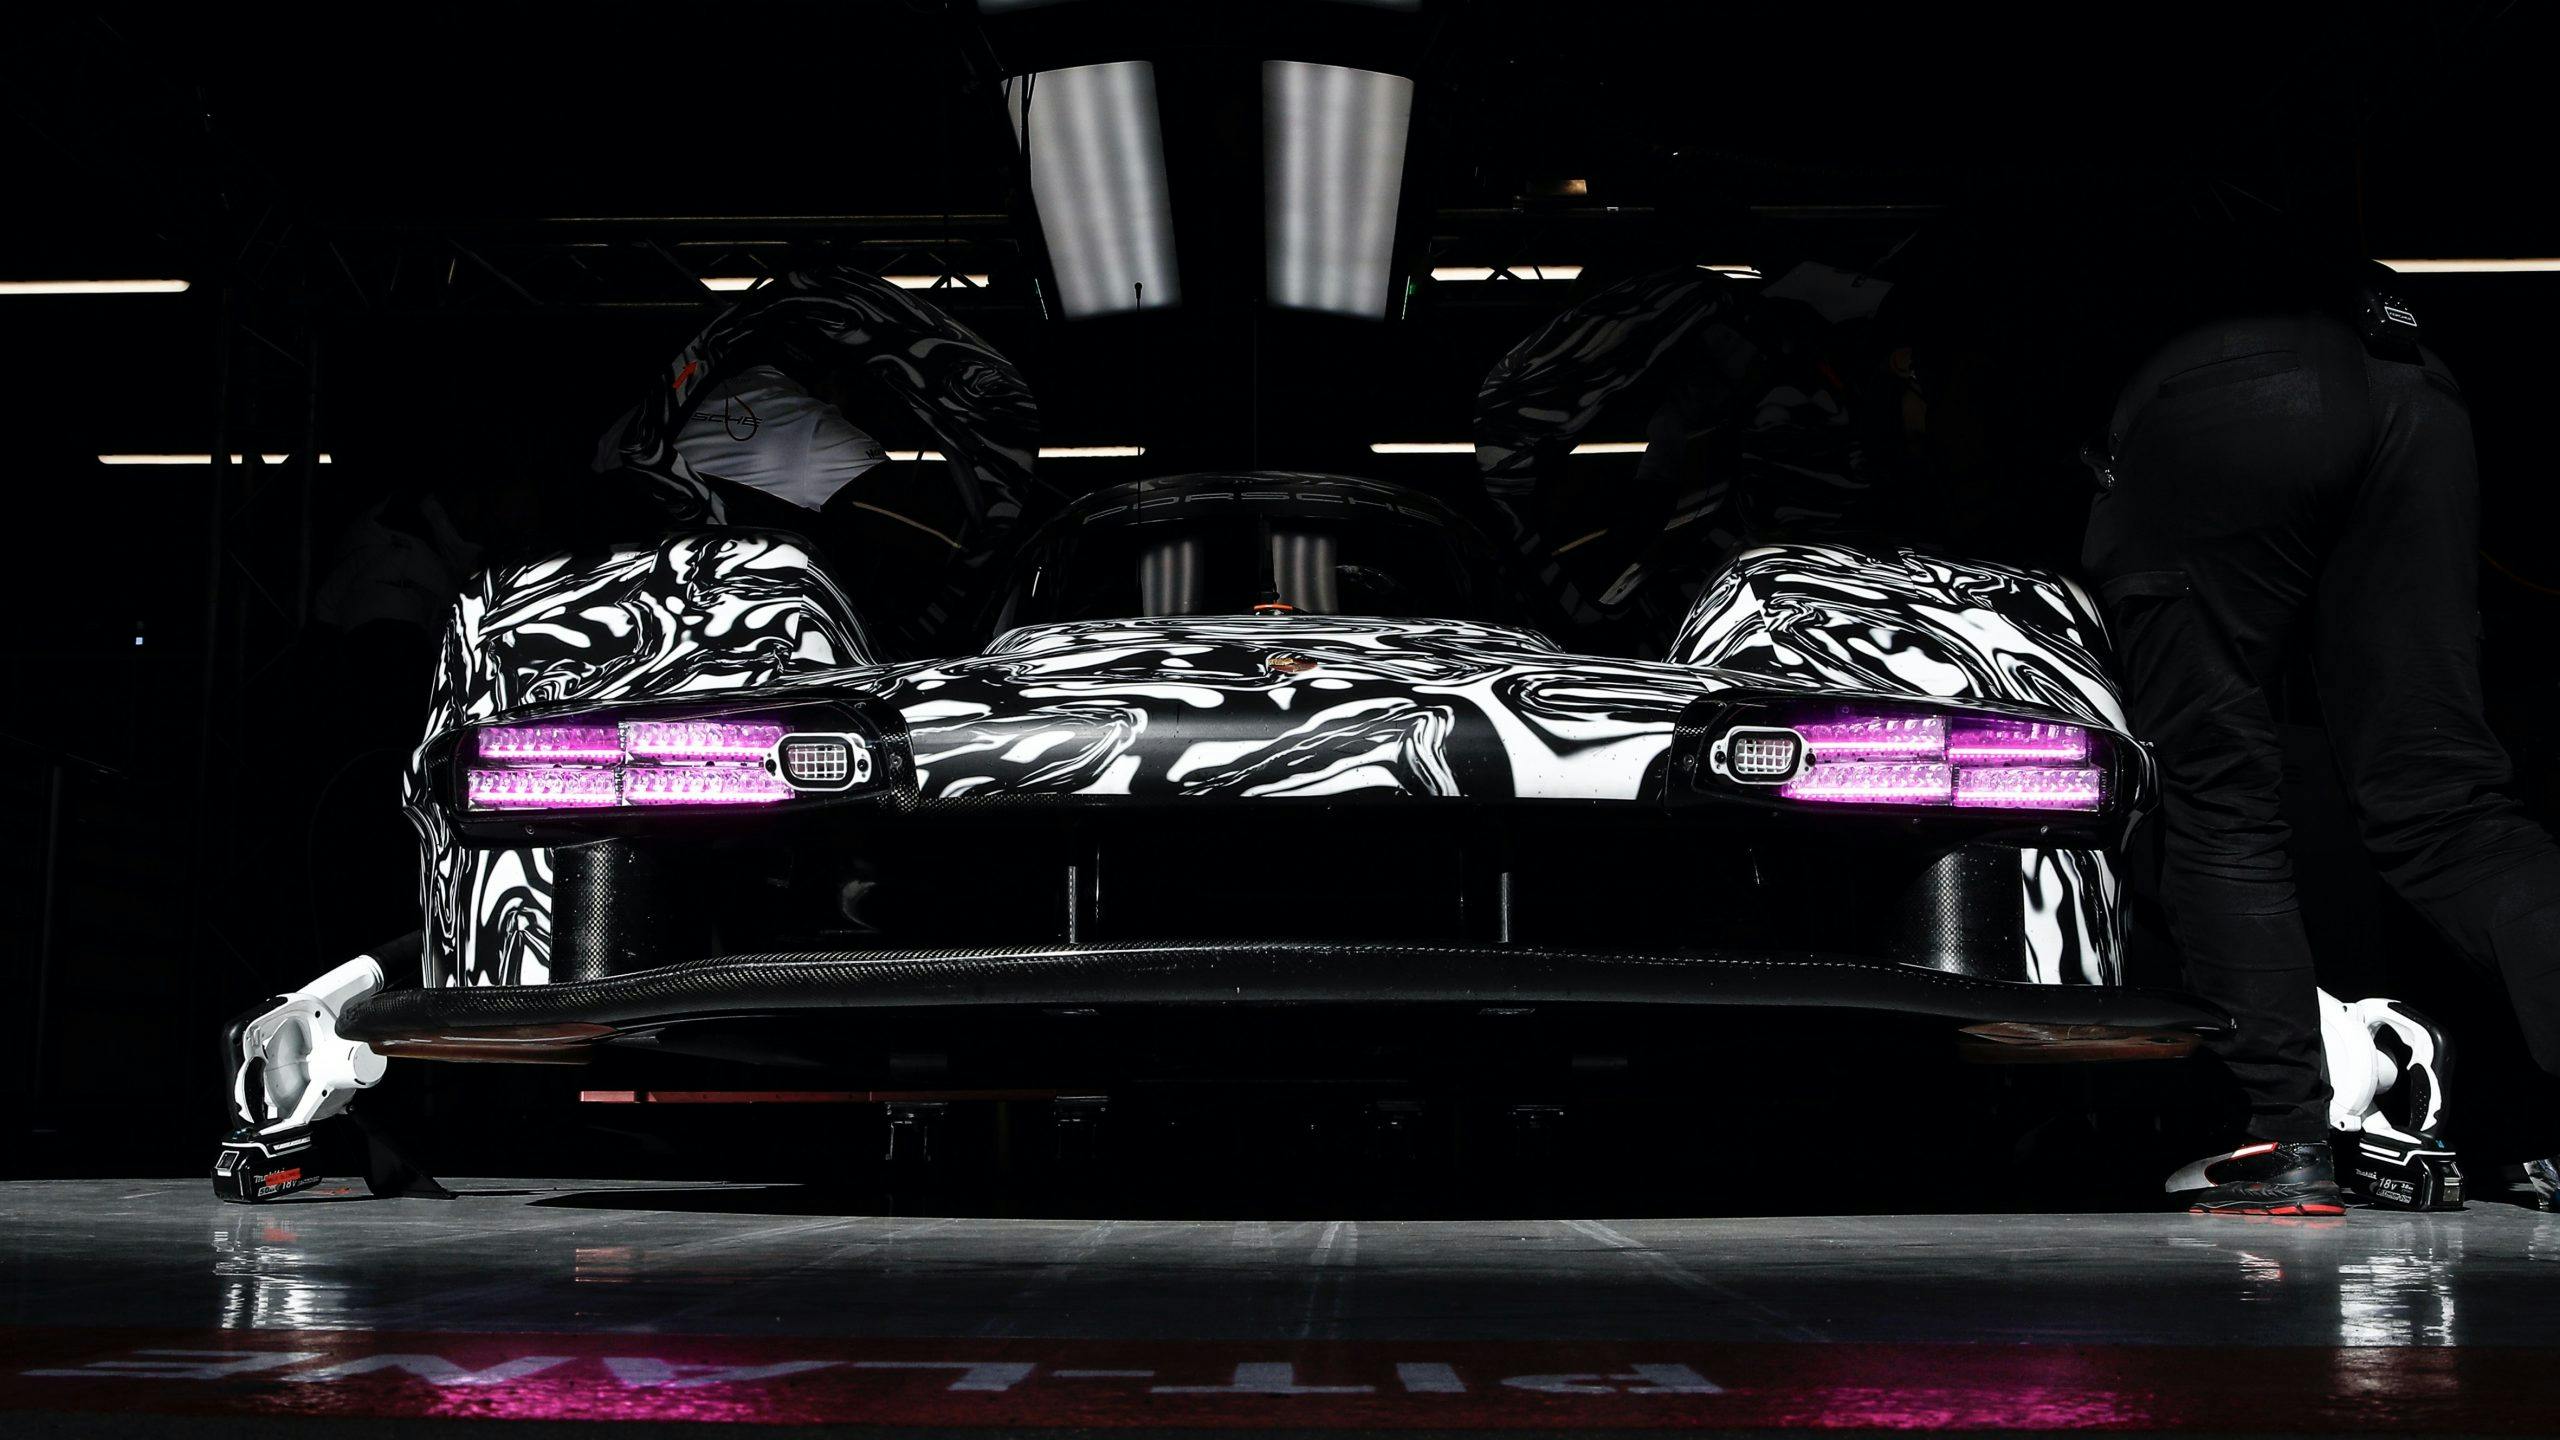 Porsche LMDh prototype Le Mans Barcelona test 2022 purple lights